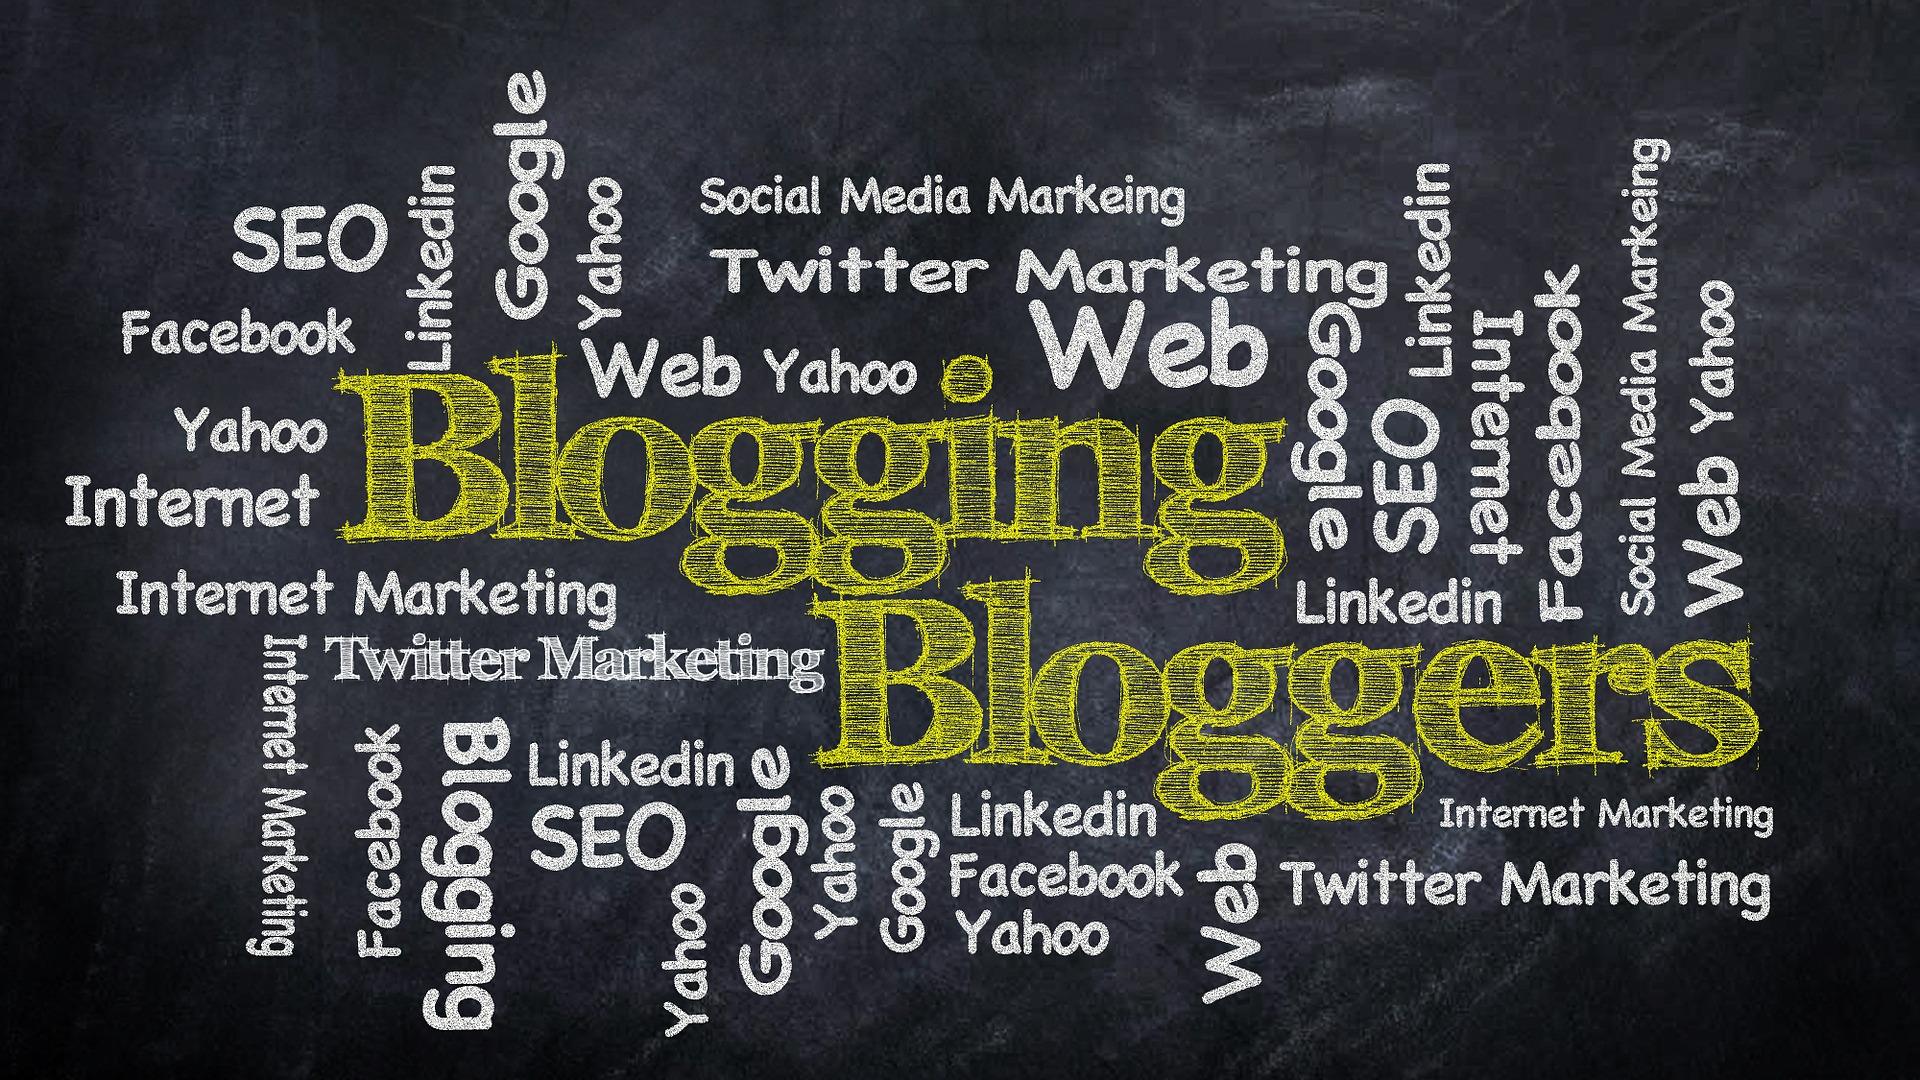 Blogging Tipps